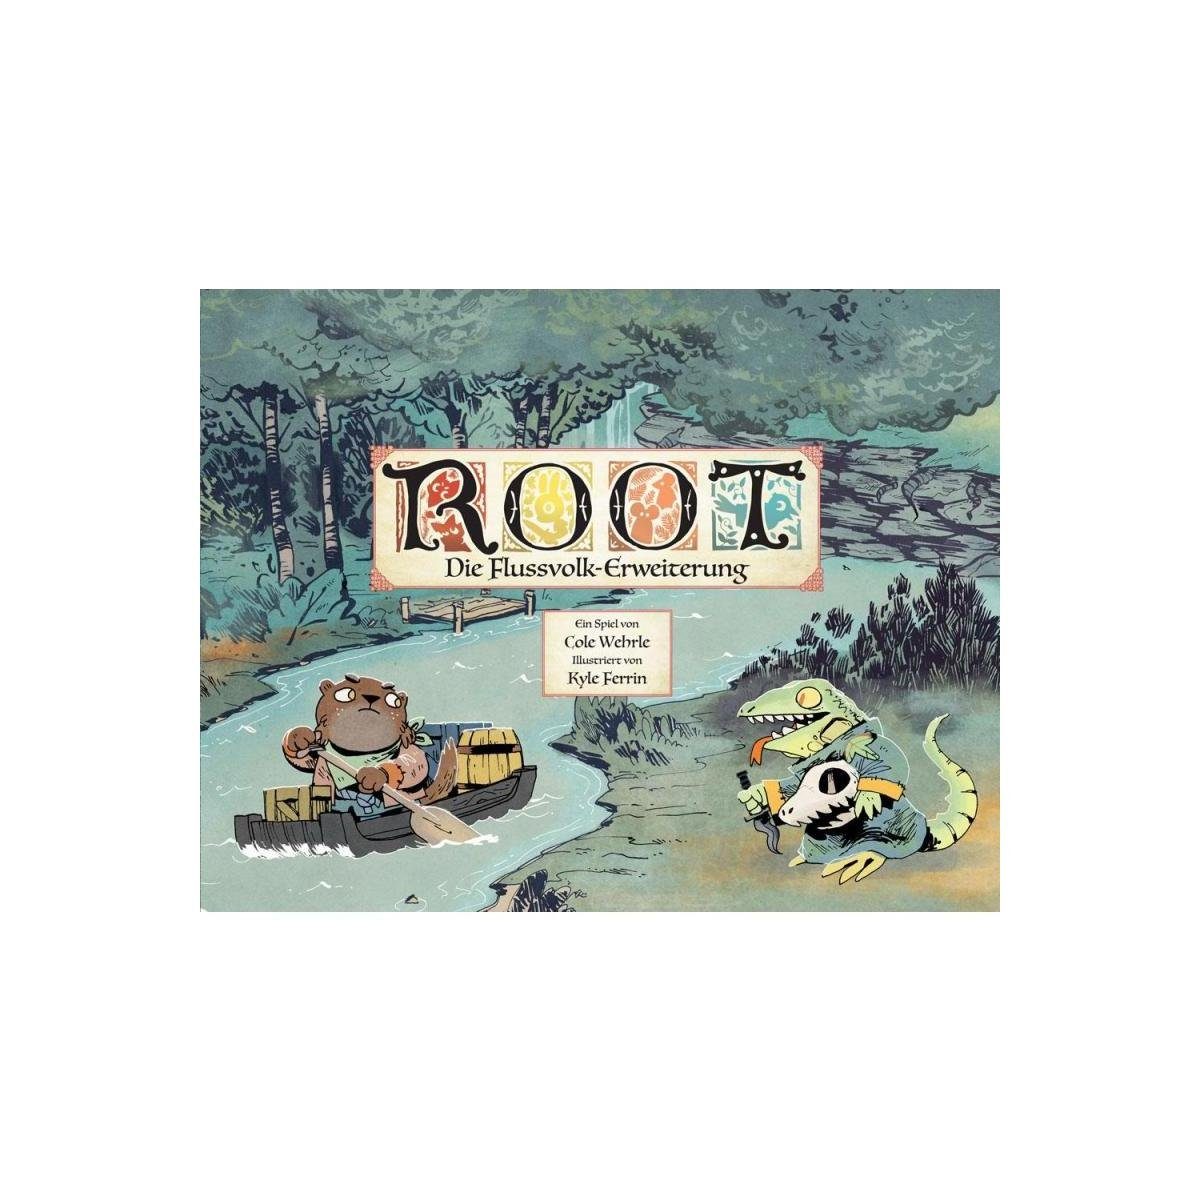 Quality Beast Spiel, Familienspiel SPWD0003 - Root: Flussvolk, ab 10 Jahren (DE-Erweiterung), Strategiespiel